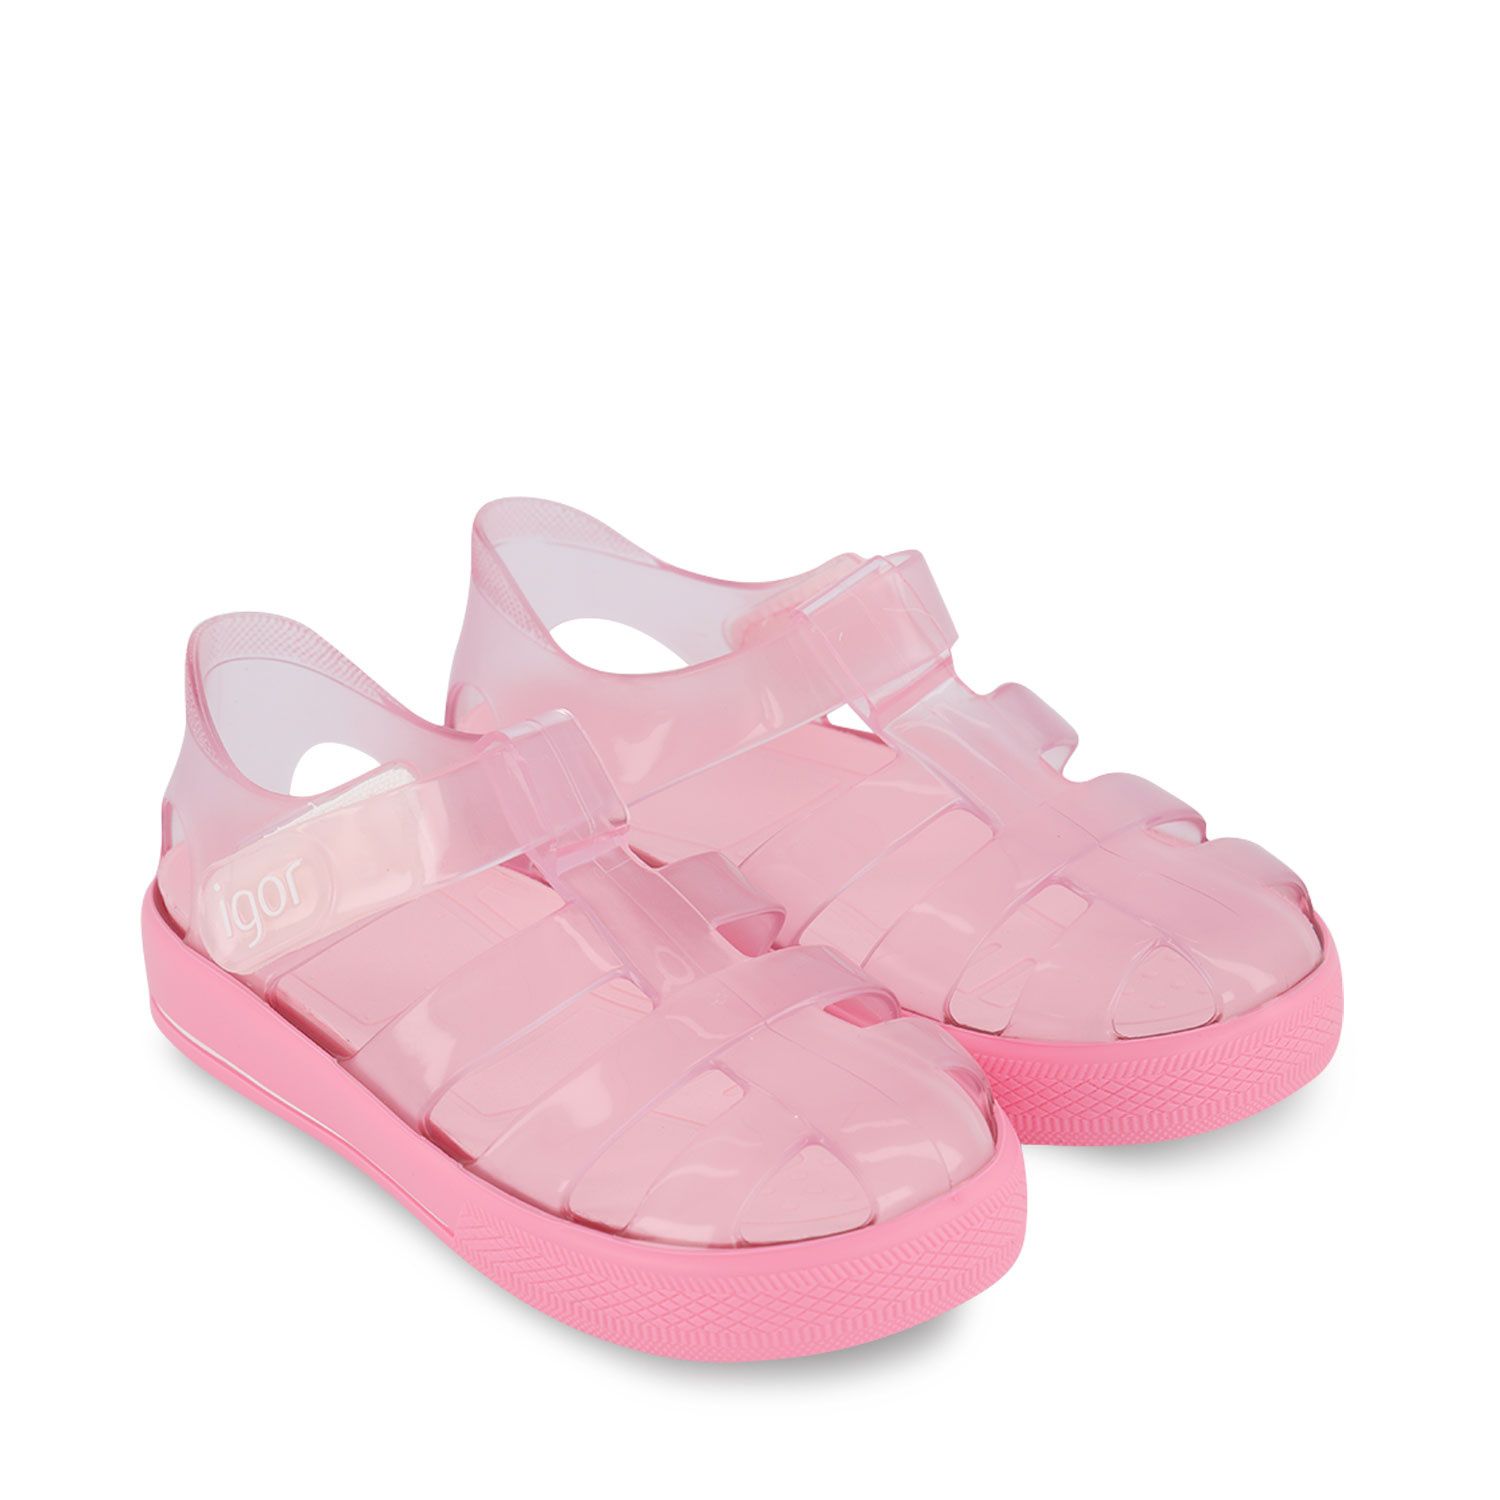 igor pink sandals